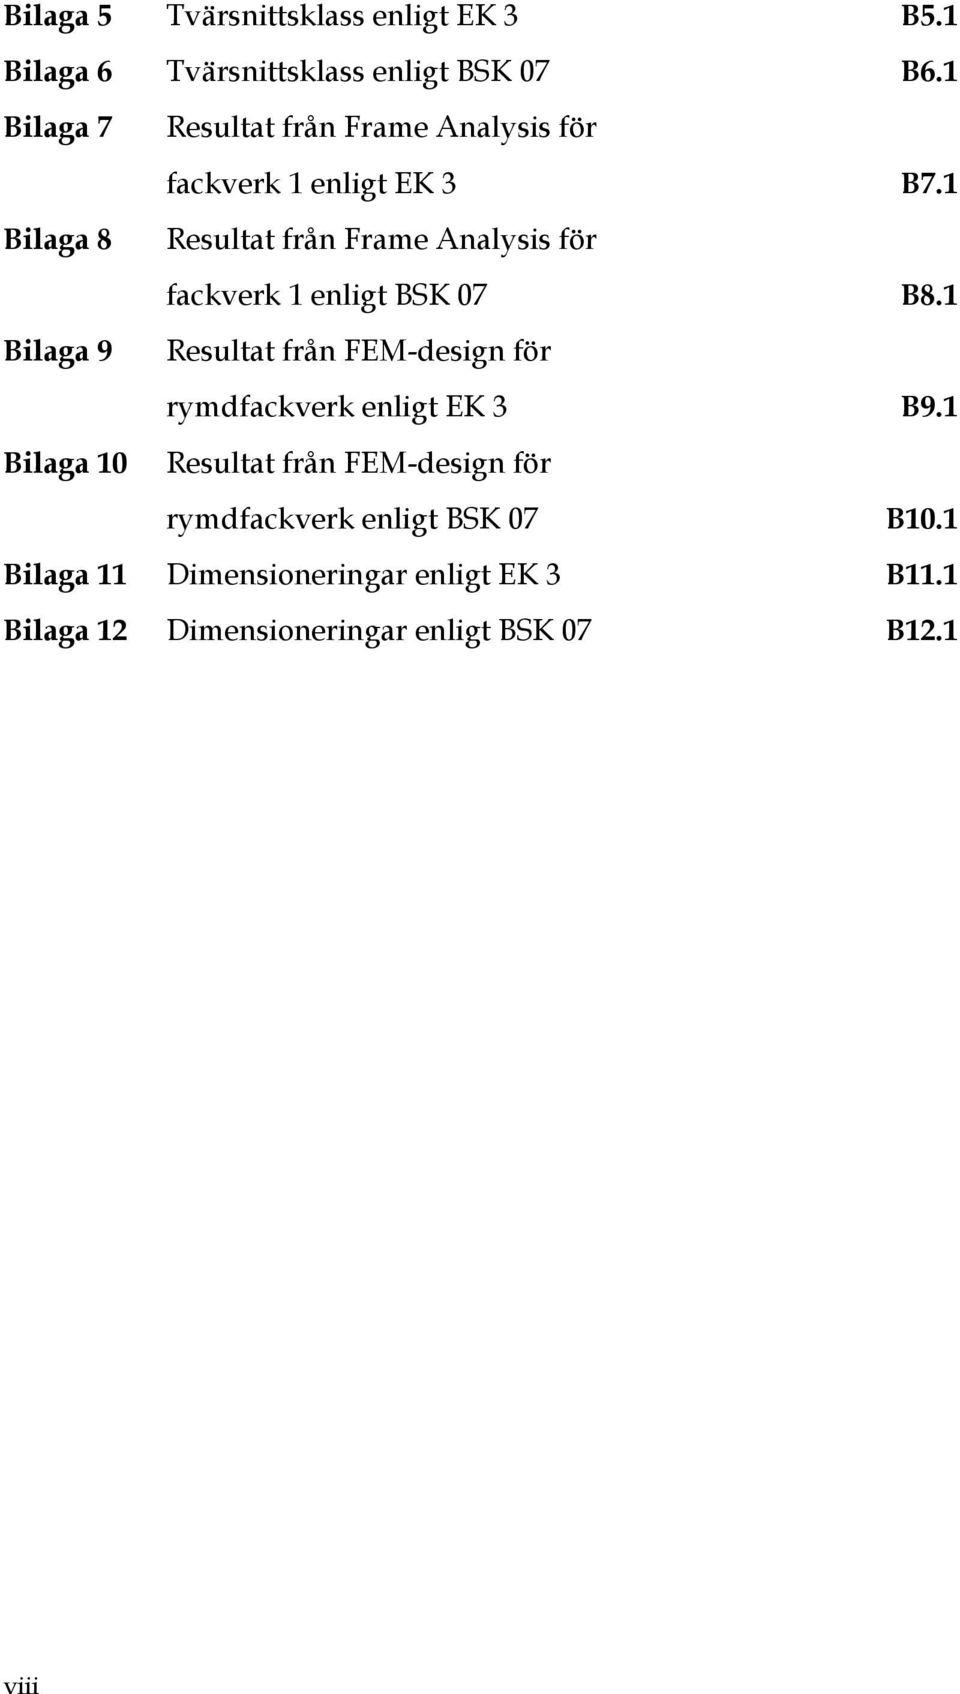 1 Bilaga 8 Resultat från Frame Analysis för fackverk 1 enligt BSK 07 B8.